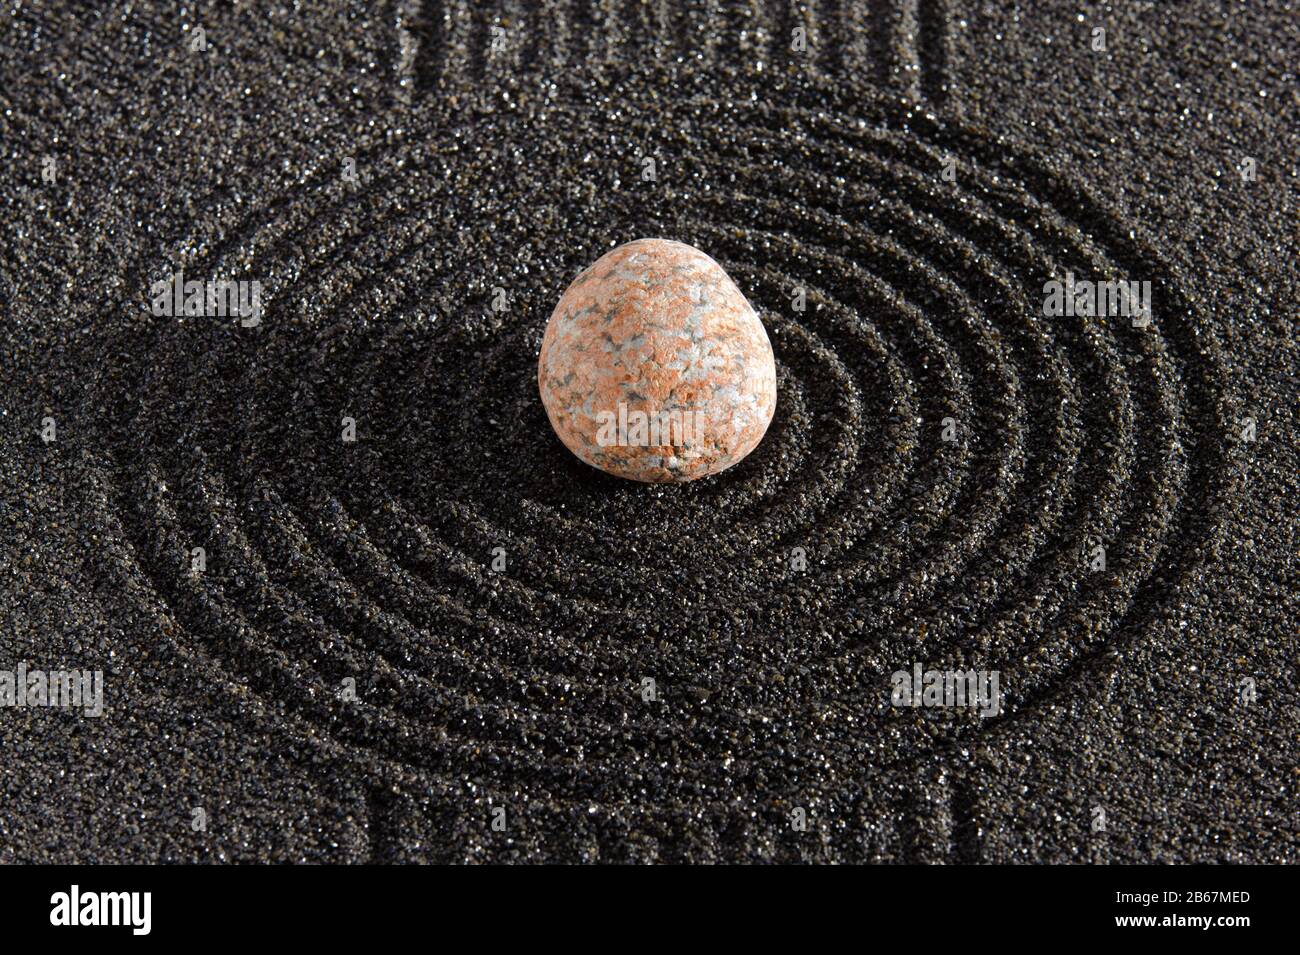 Japanischer ZEN Garten der Meditation mit Sand und Stein Stock Photo